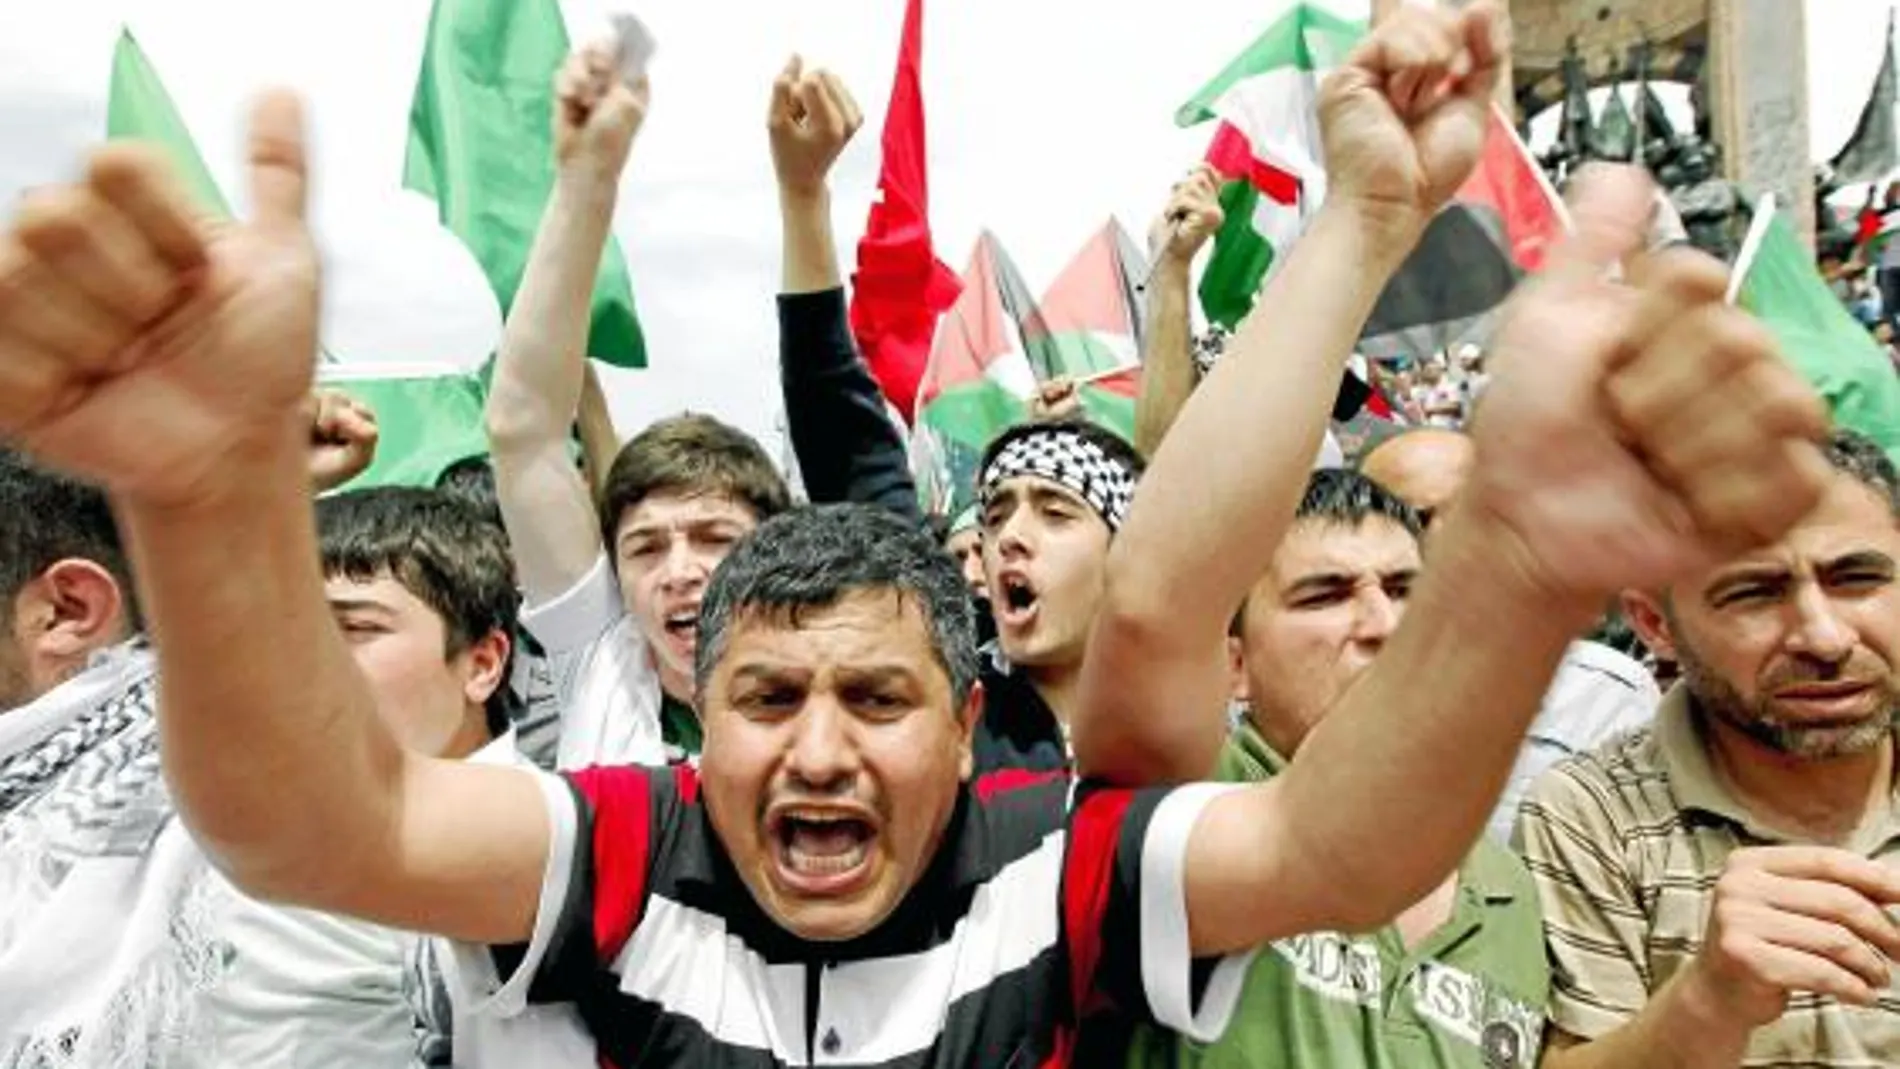 Un grupo de manifestantes musulmanes grita consignas durante una protesta contra Israel en Estambul